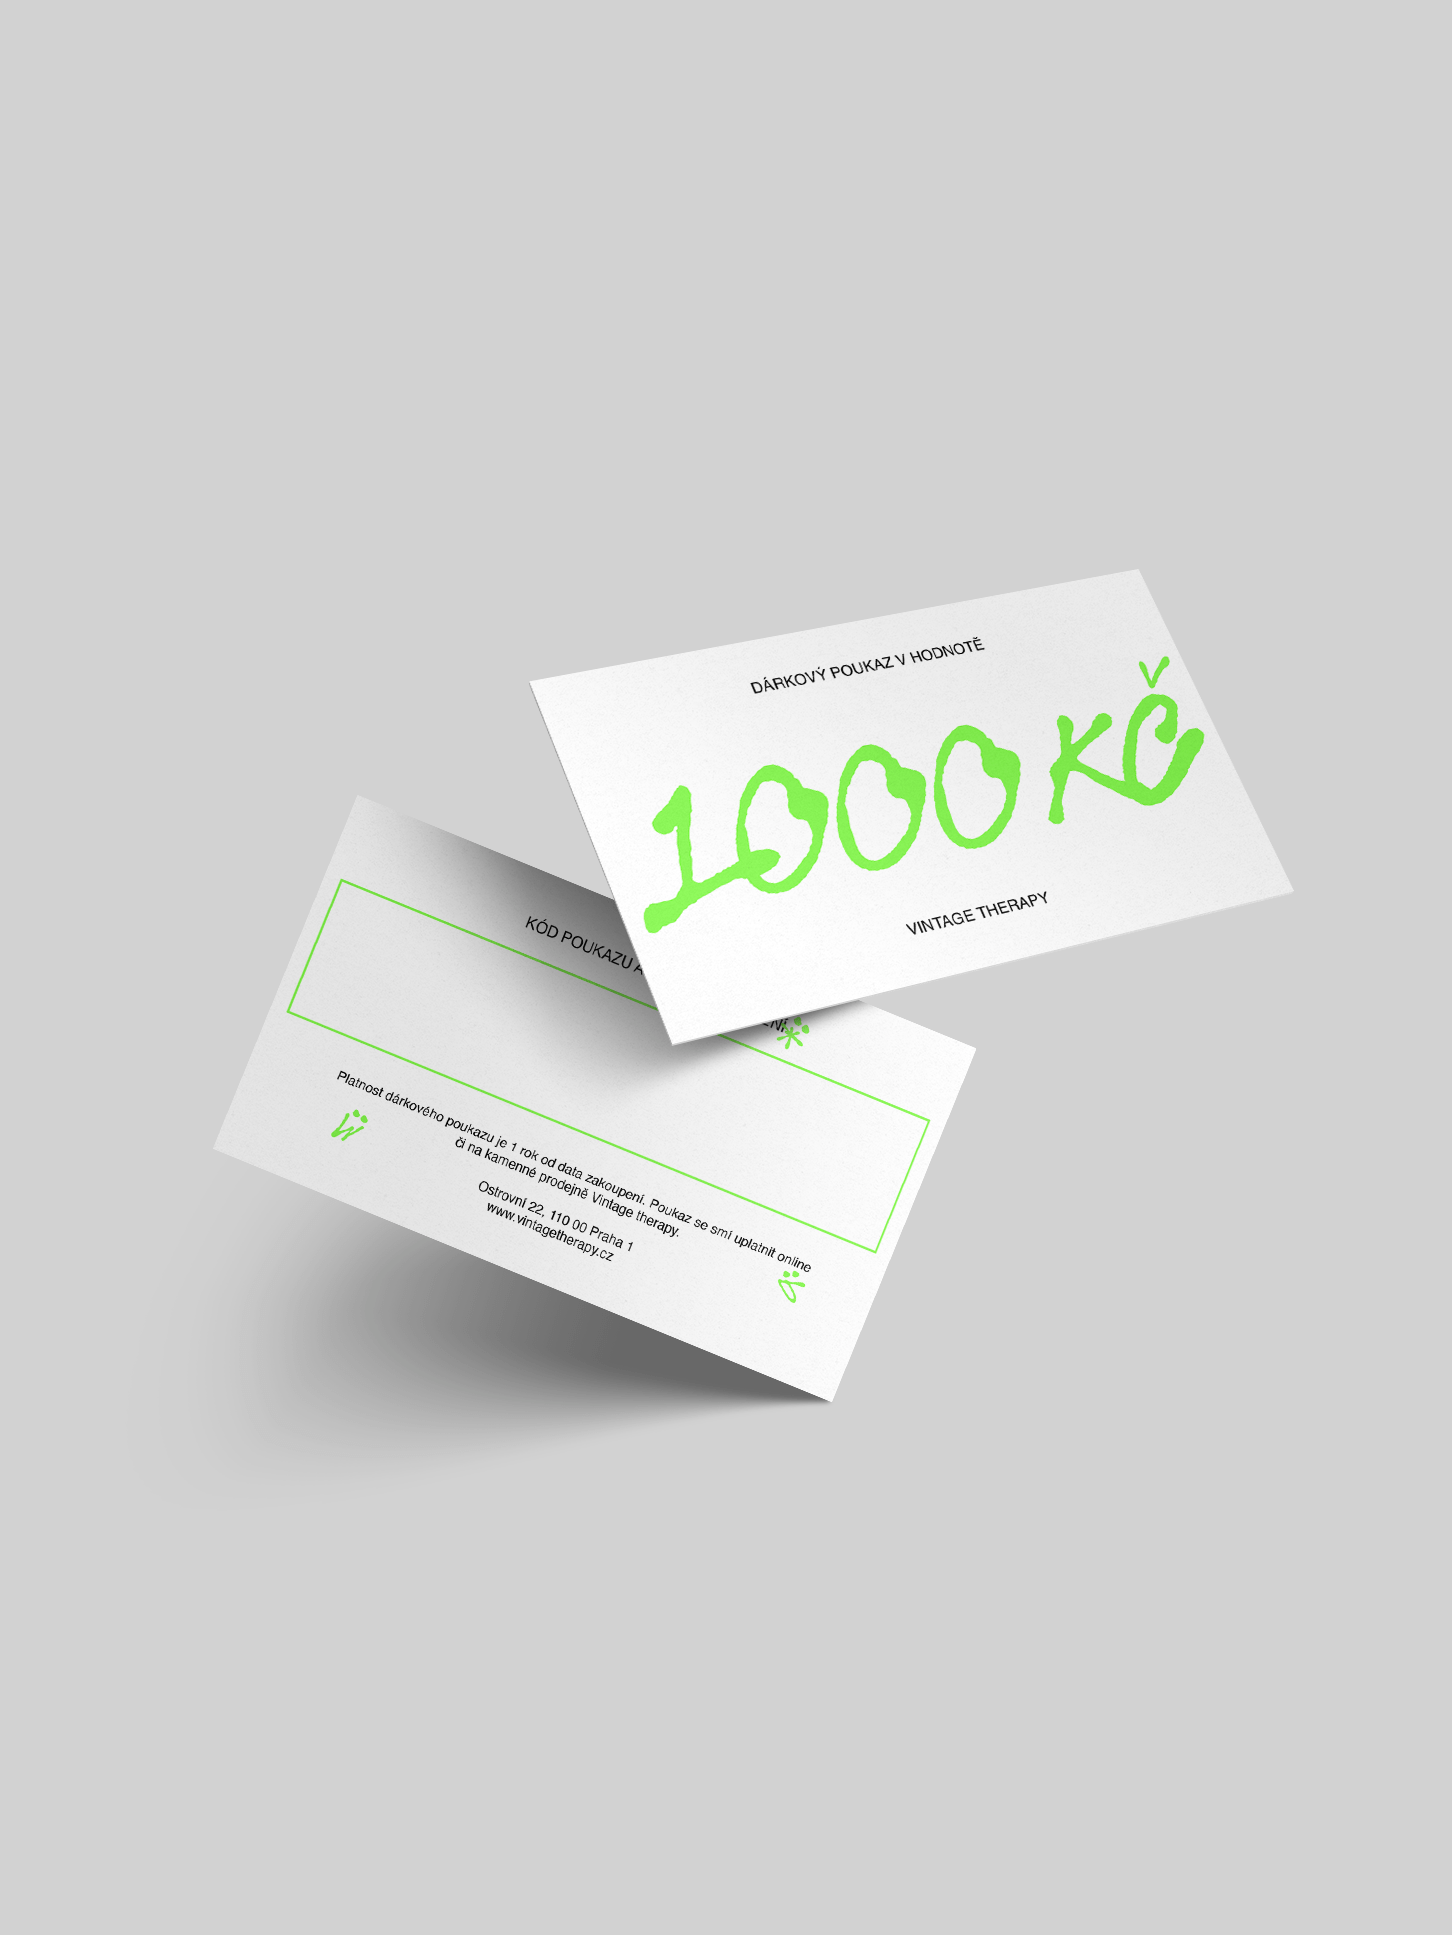 Dárkový poukaz za 1000 Kč (zelená verze)